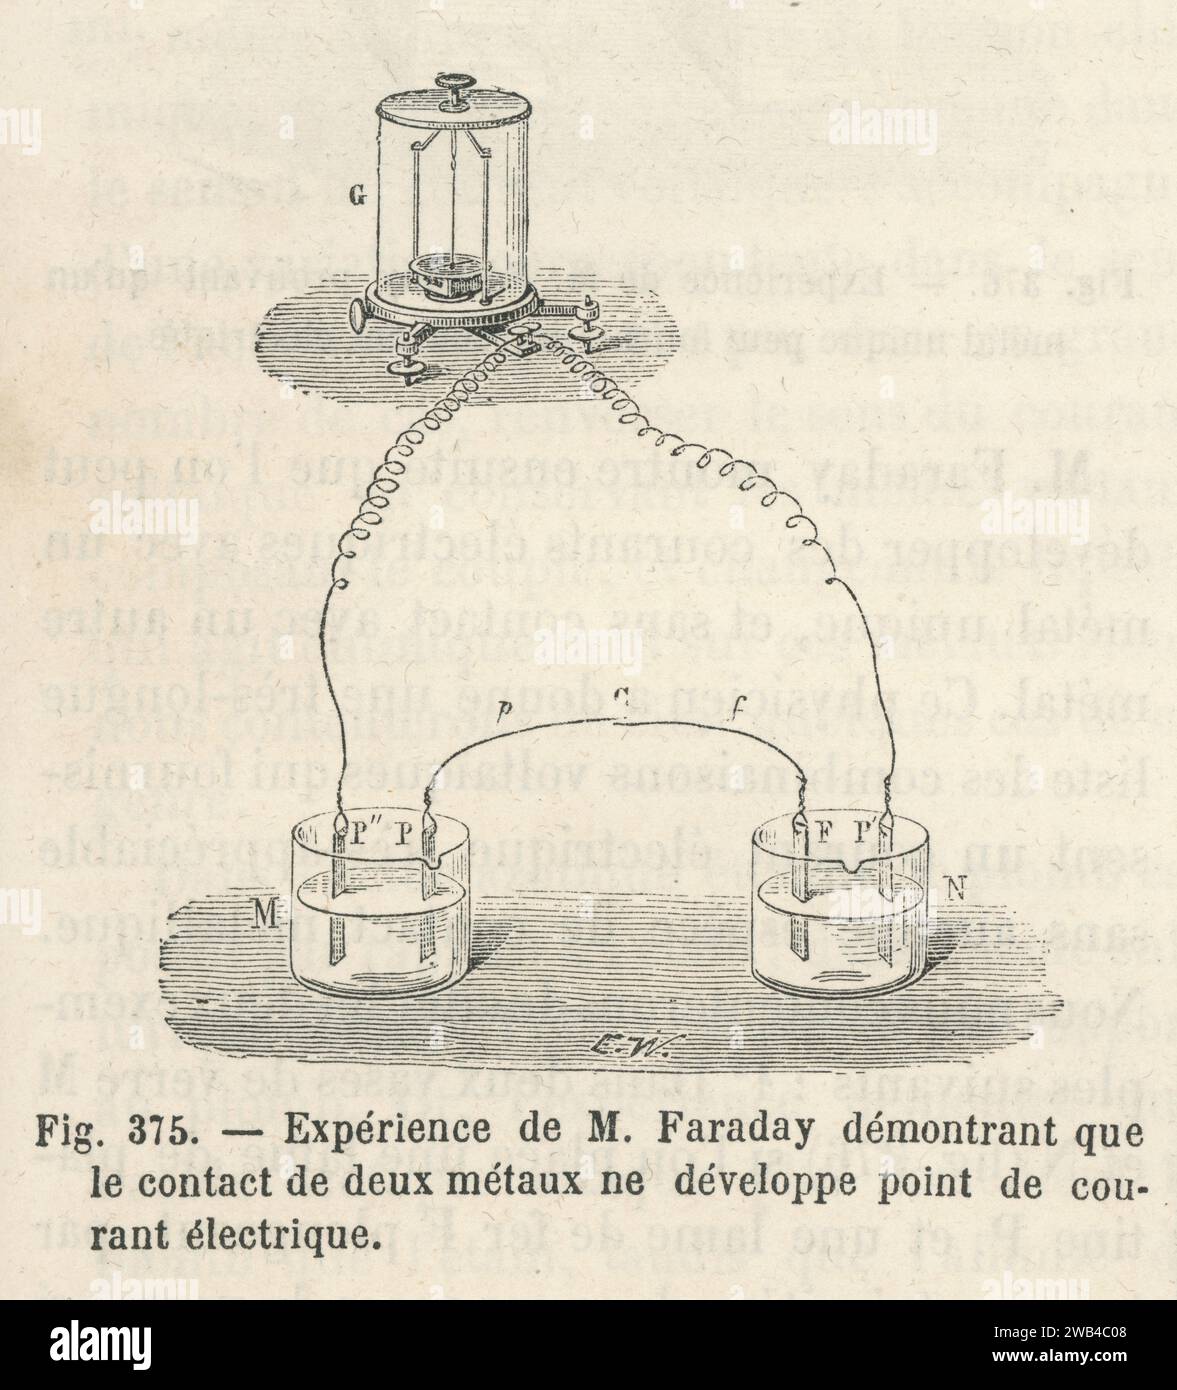 L'esperimento di Faraday che dimostra che l'elettricità prodotta da una pila di batterie proviene dall'azione chimica esercitata dagli acidi sui metalli di cui sono composti, e non dal contatto tra i metalli stessi. Prima metà del XIX secolo. Illustrazione da "Les Merveilles de la Science ou description populaire des inventions modernes" scritta da Louis Figuier e pubblicata nel 1867 da Furne, Jouvet et Cie Foto Stock